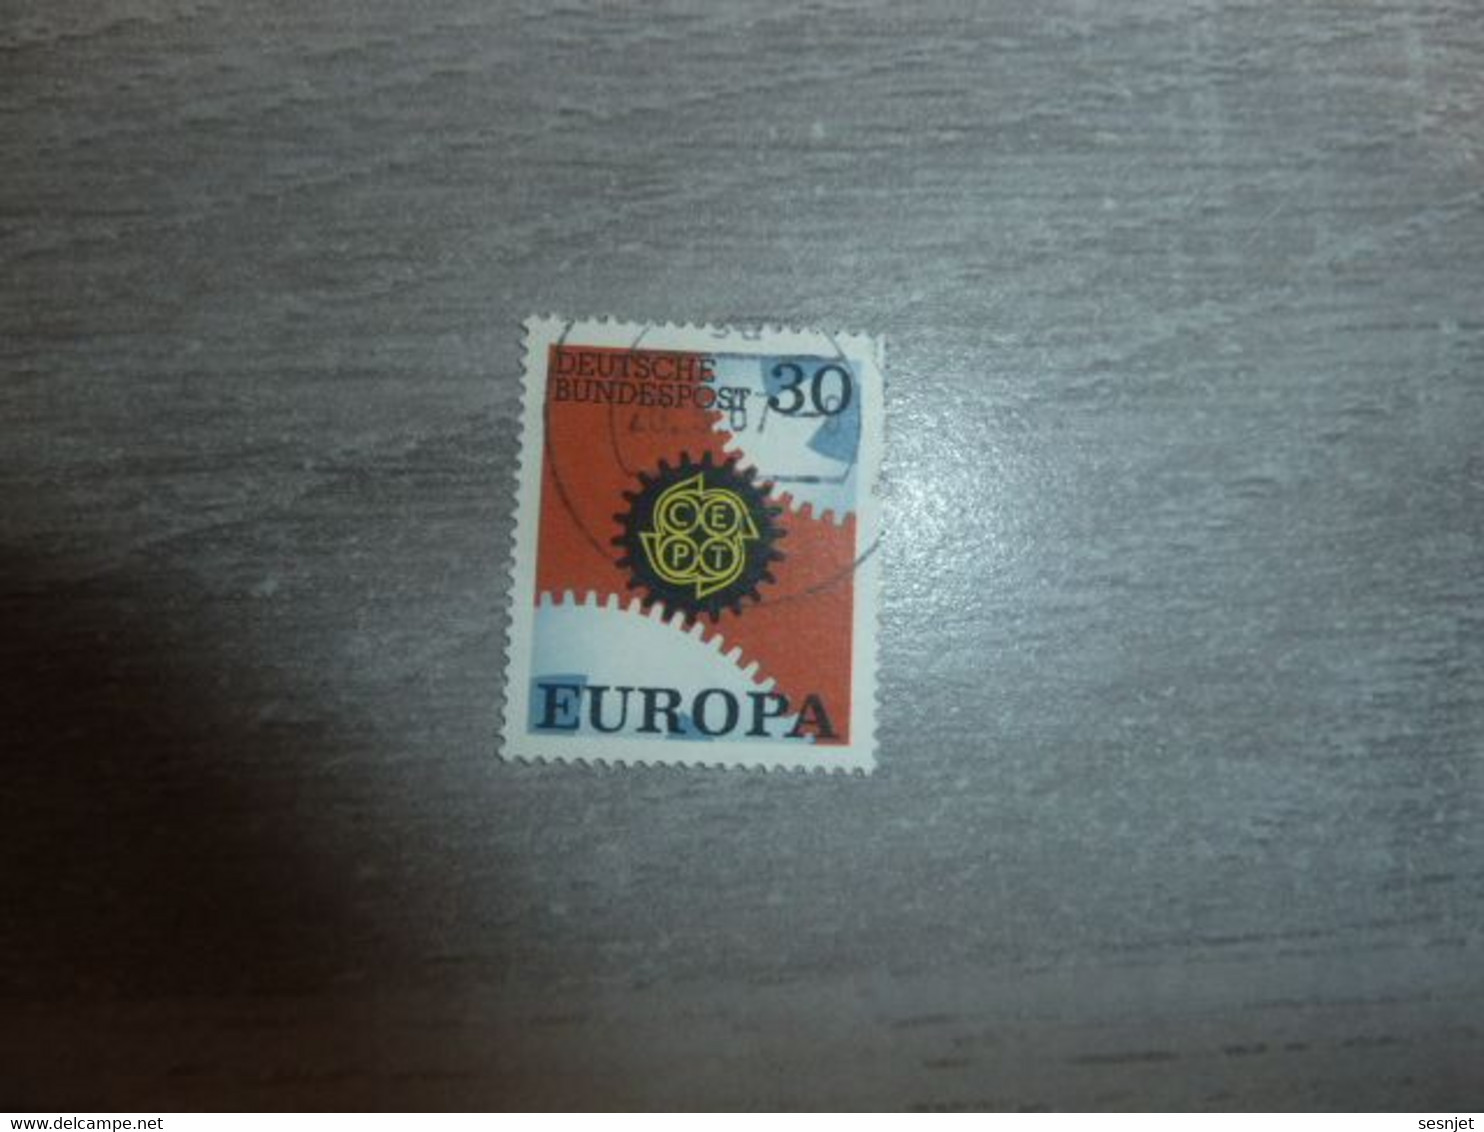 Deutsche Bundespost - Europa - C.e.p.t. - Val 30 - Multicolore - Oblitéré - Année 1967 - - 1967